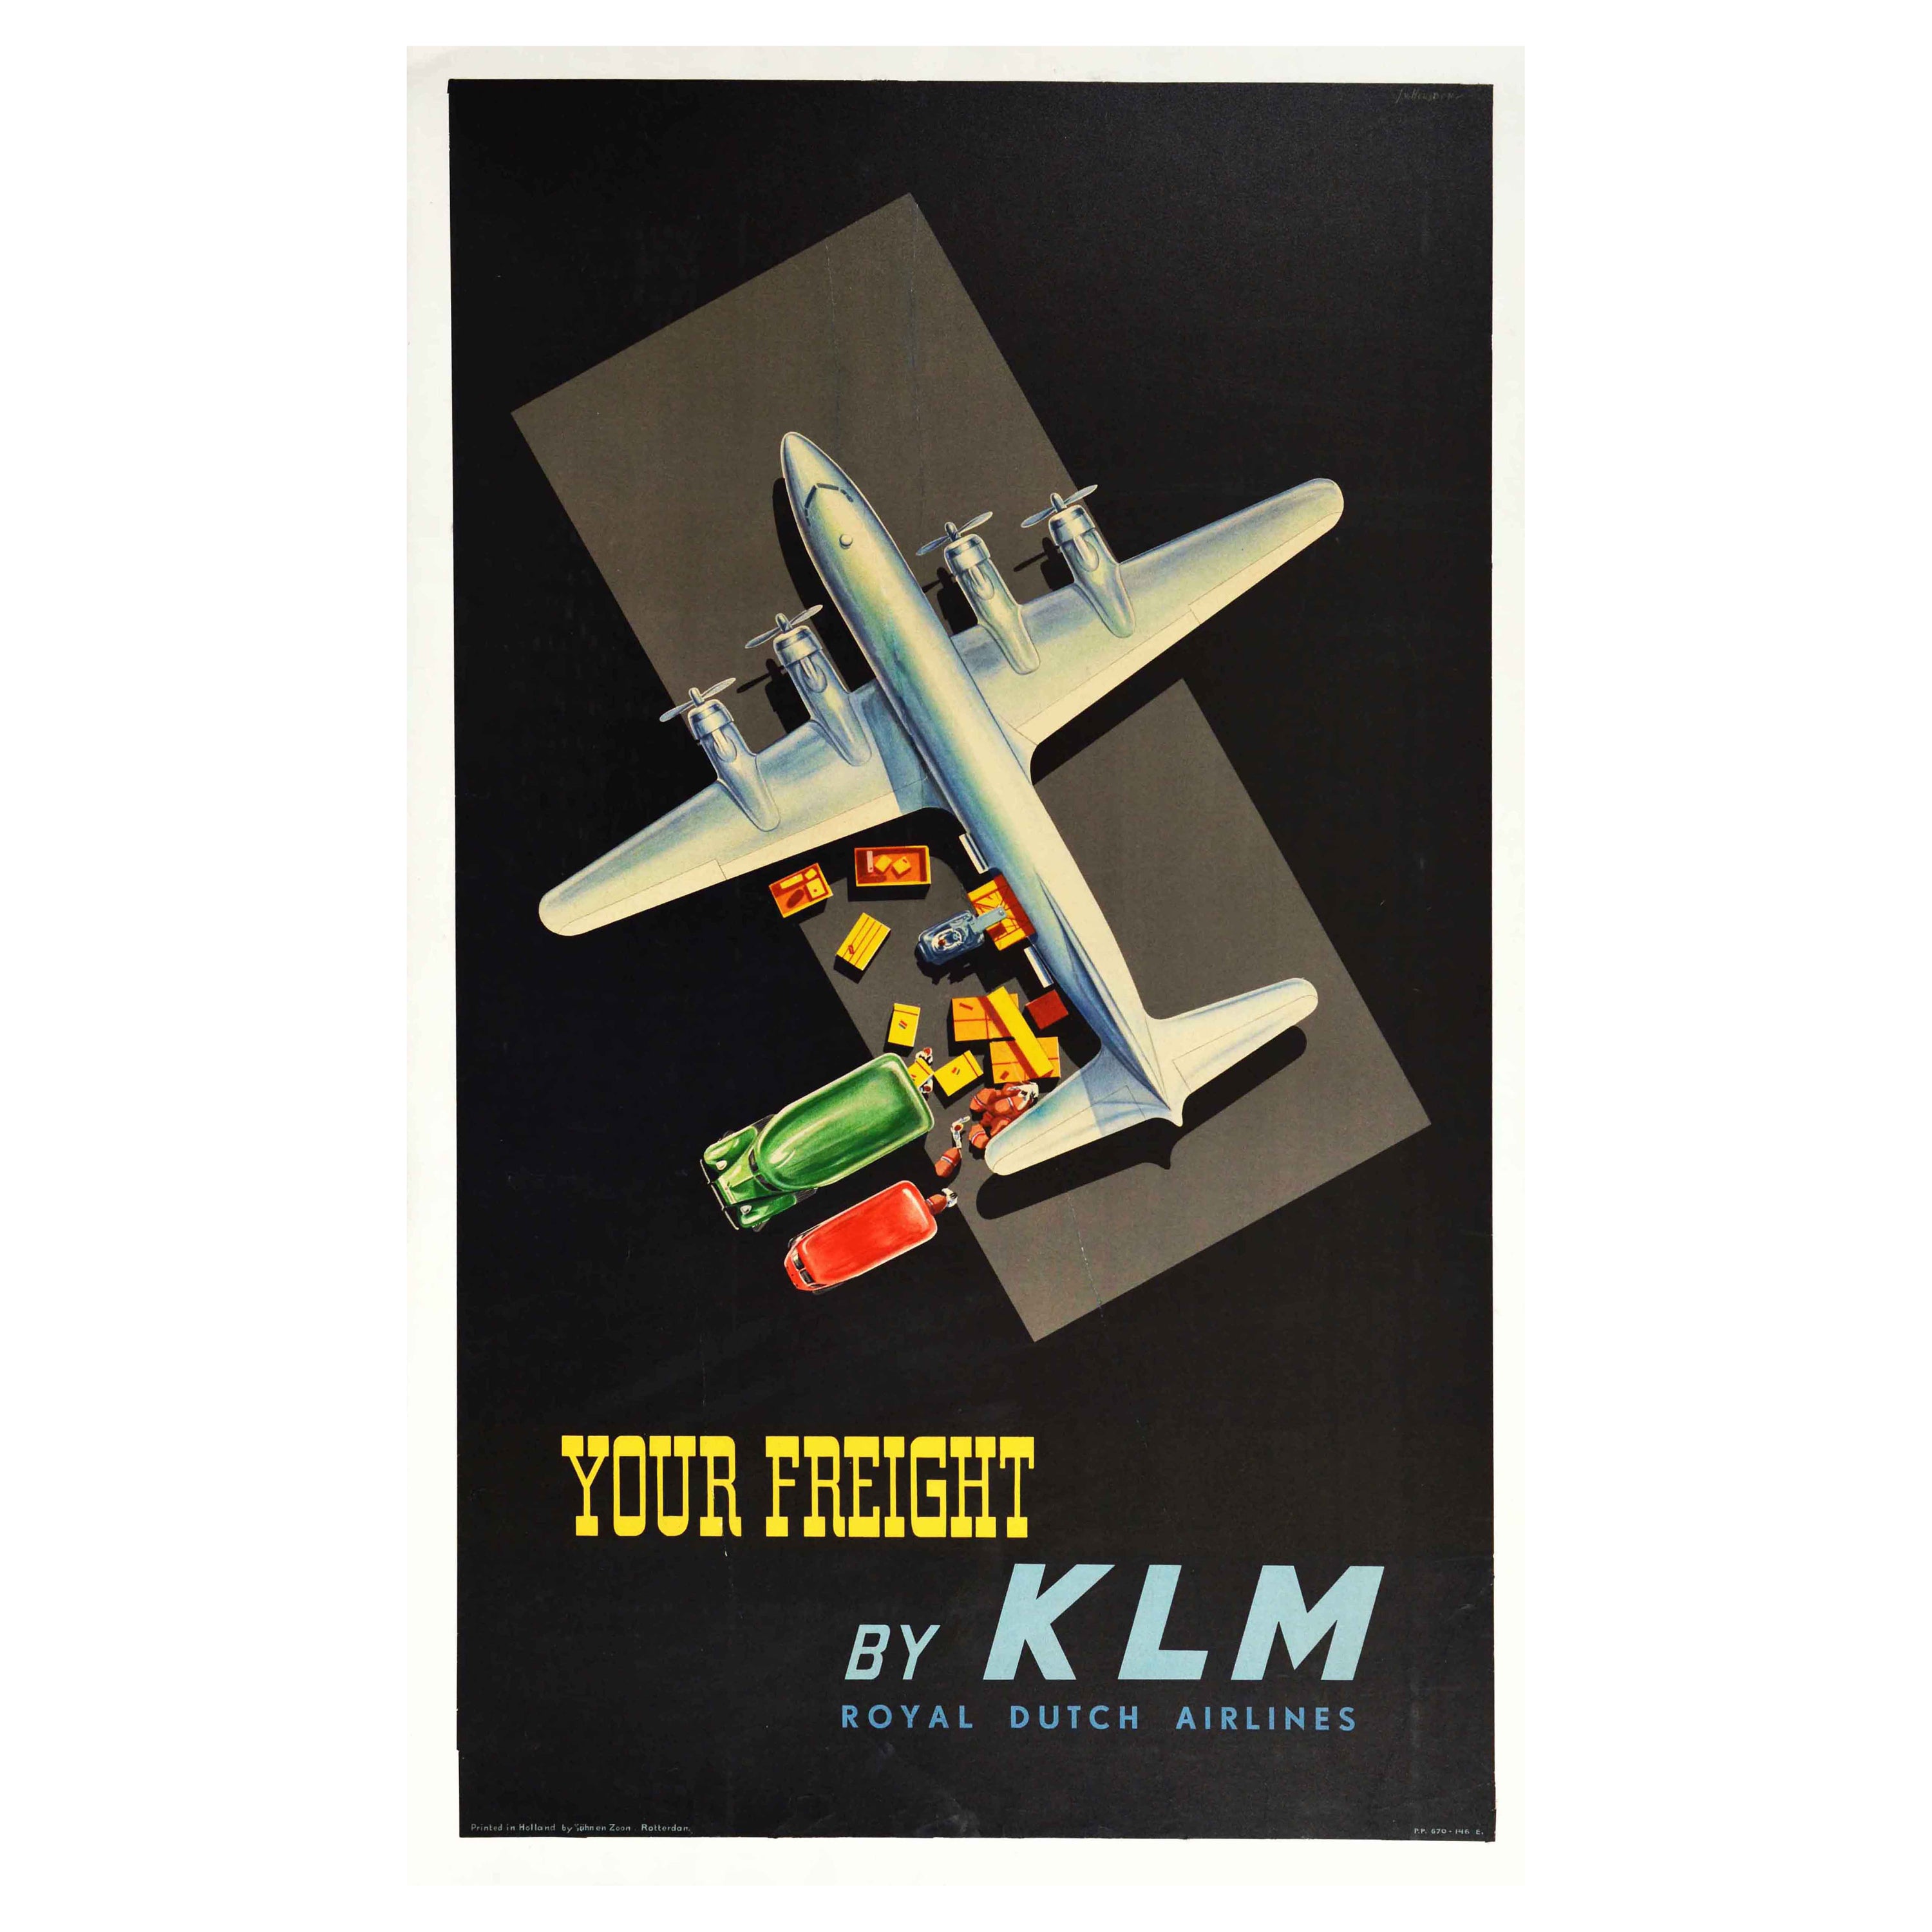 Homeward to Netherlands KLM Royal Dutch Airlines Vintage Travel Poster Print